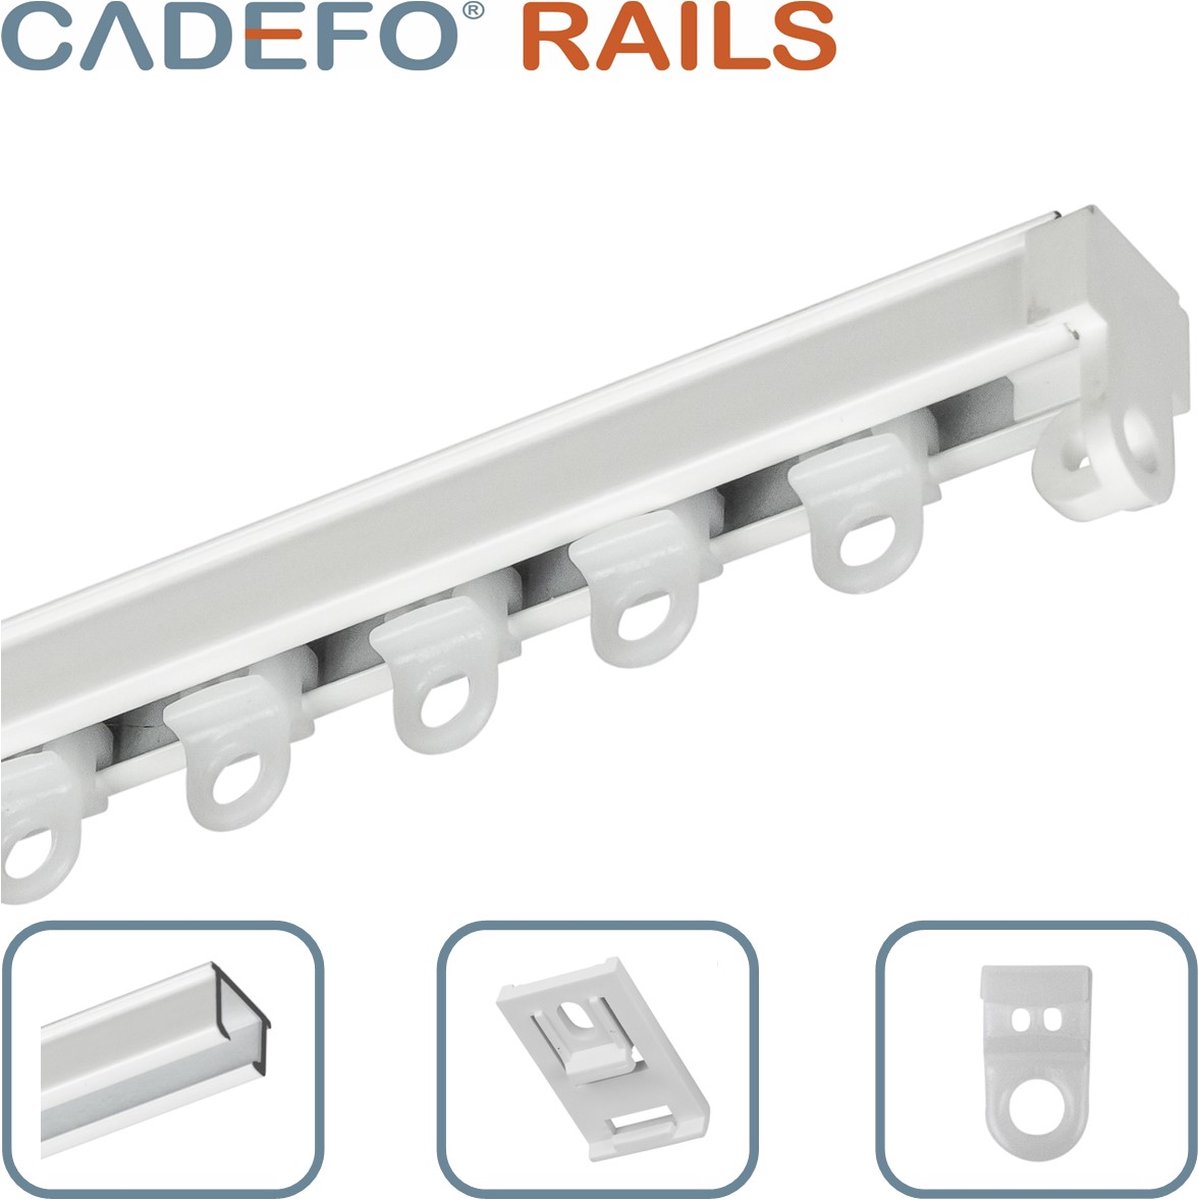 CADEFO RAILS (351 - 400 cm) Gordijnrails - Compleet op maat! - UIT 1 STUK - Leverbaar tot 6 meter - Plafondbevestiging - Lengte 359 cm